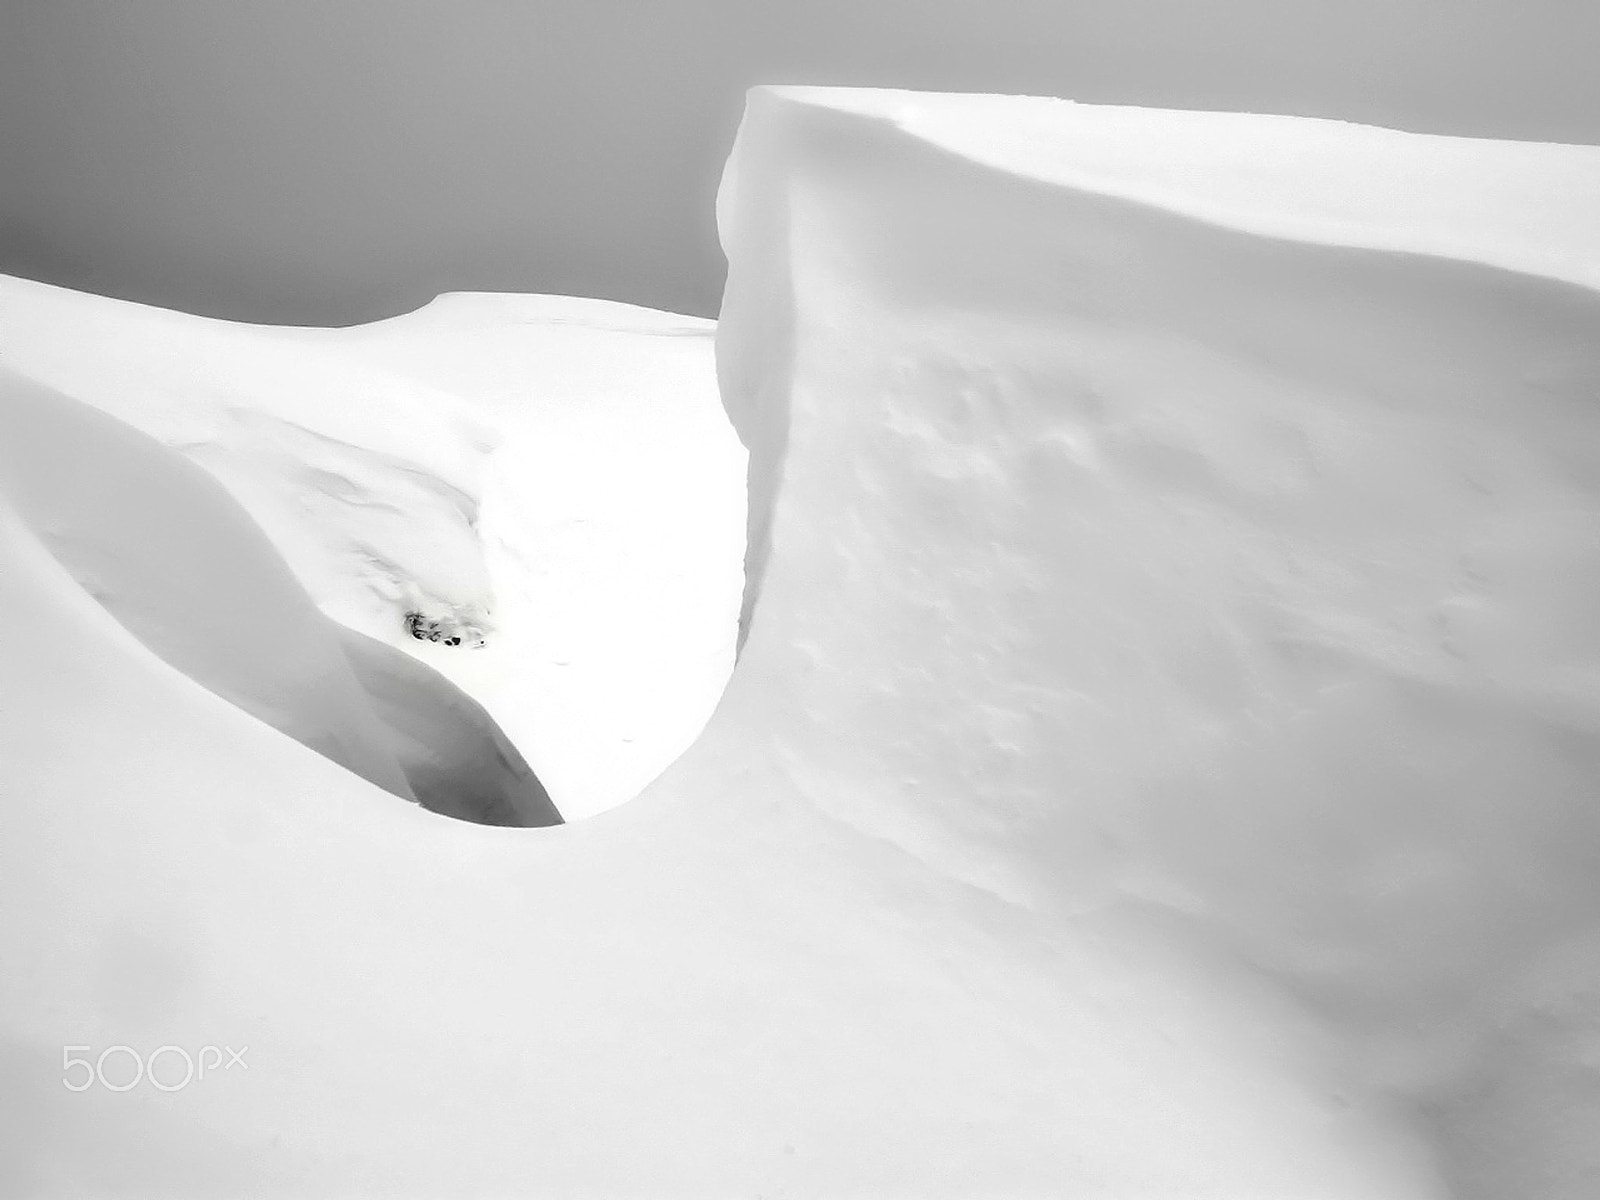 Nikon E4500 sample photo. Snow photography